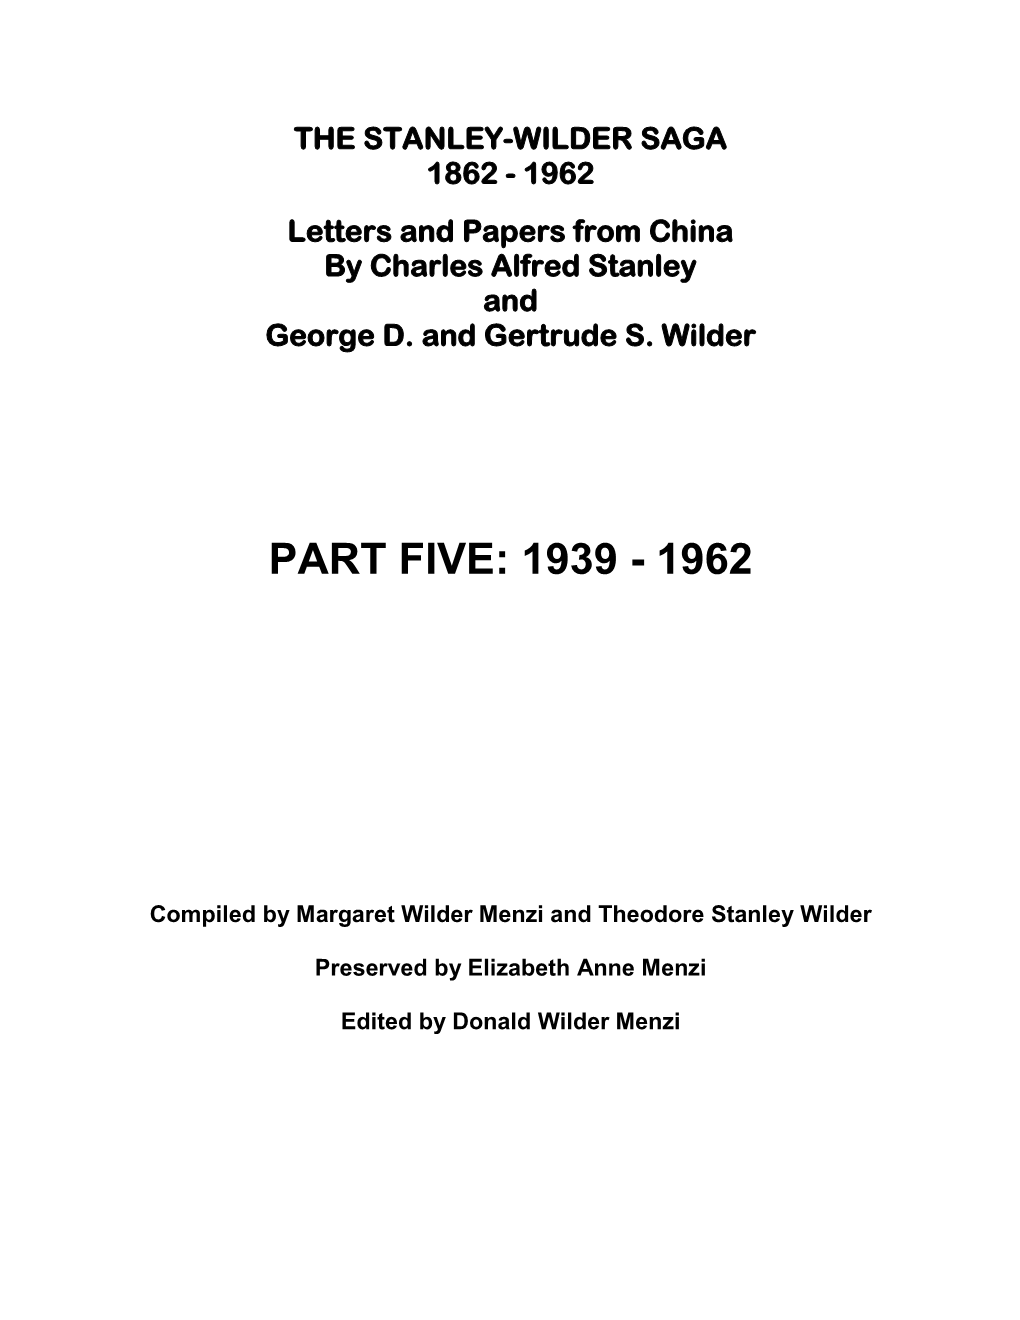 The Stanley-Wilder Saga 1862 - 1962